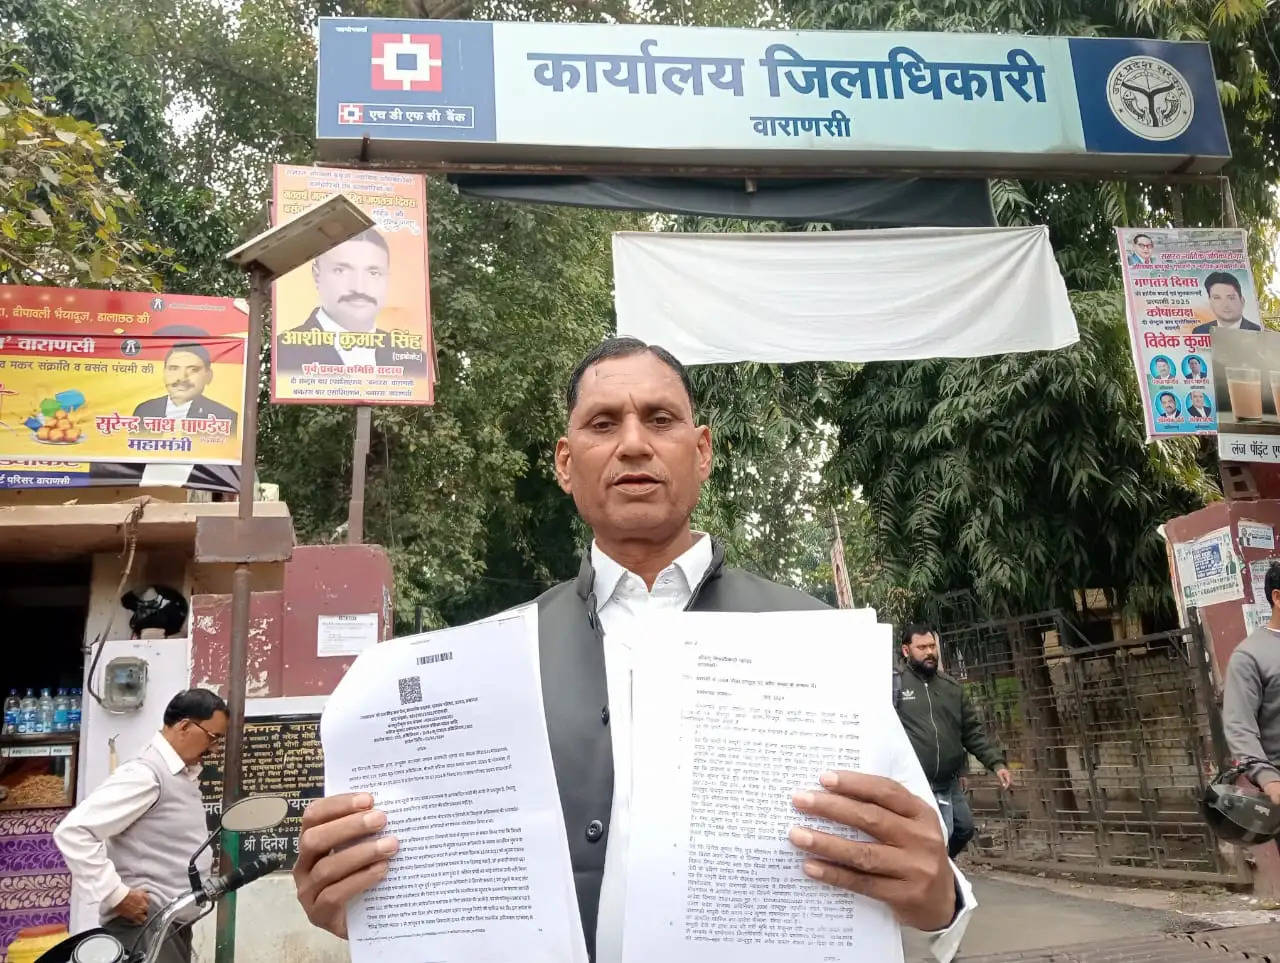 Varanasi News: जिला मुख्यालय पर पीड़ित प्राथी जवाहर यादव द्वारा डीएम को थाना शिवपुर अंतर्गत अवेध कब्जा करने को लेकर तरीर दिया गया​​​​​​​